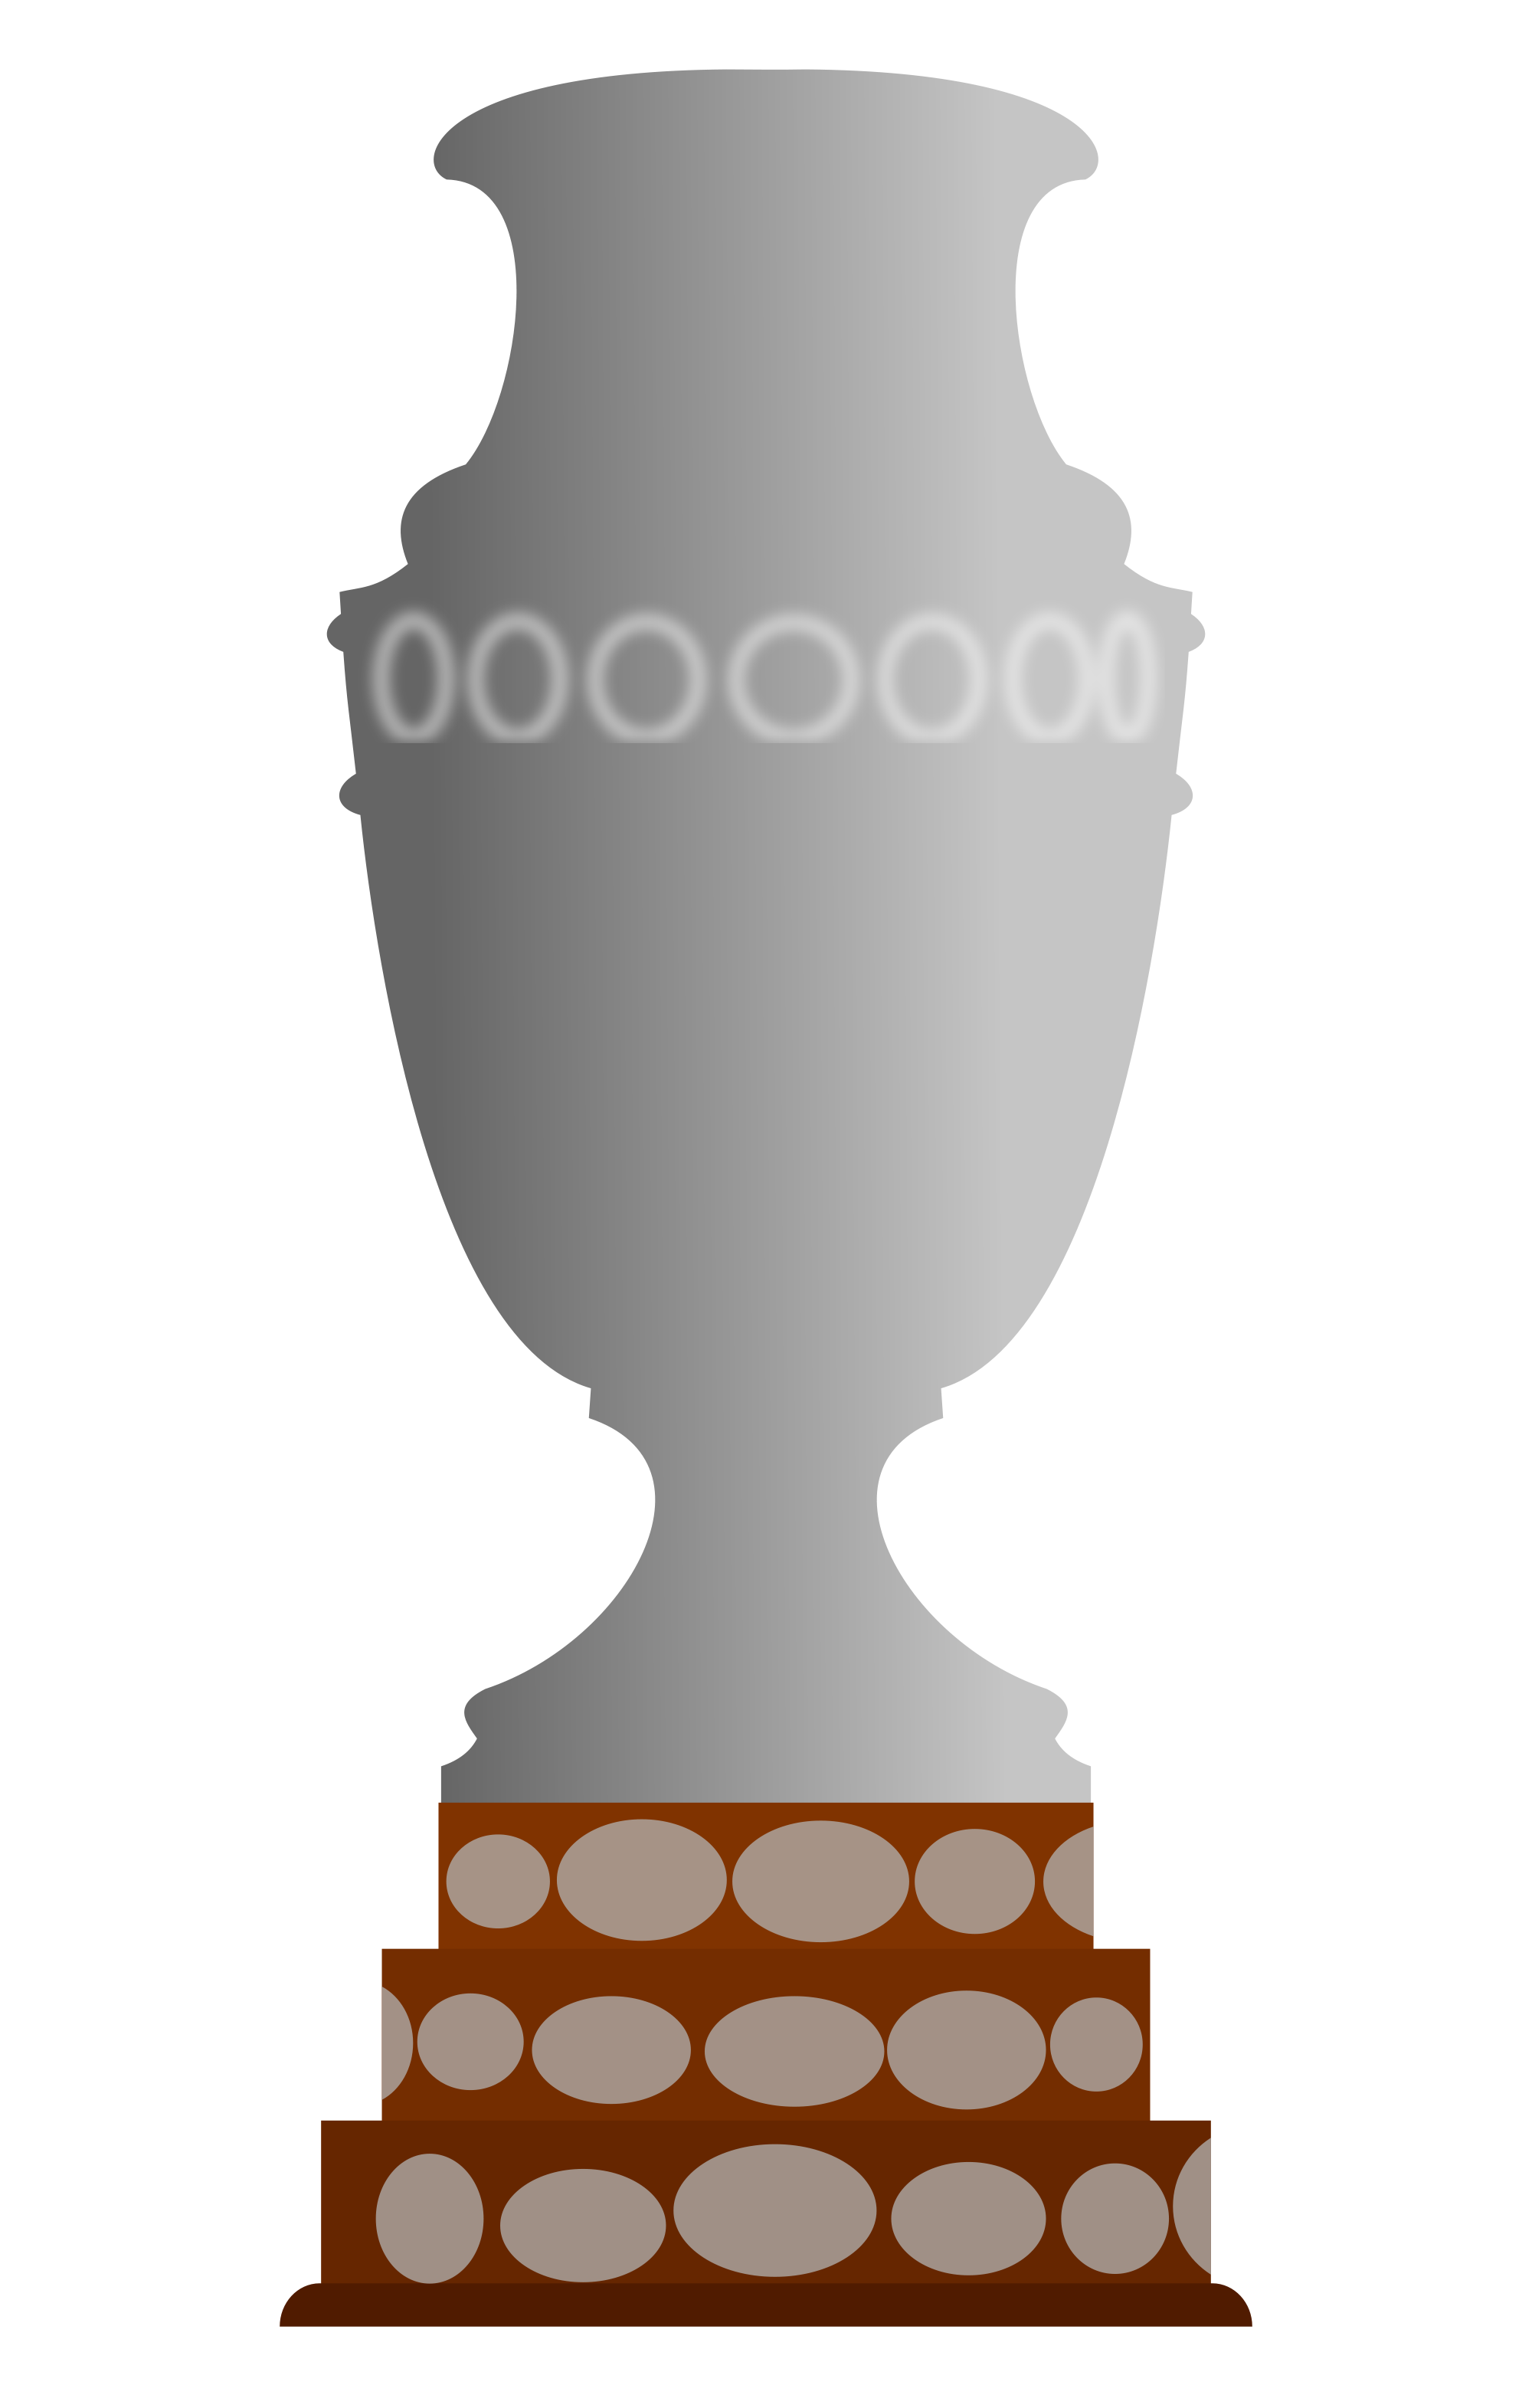 2021 Copa América - Wikipedia